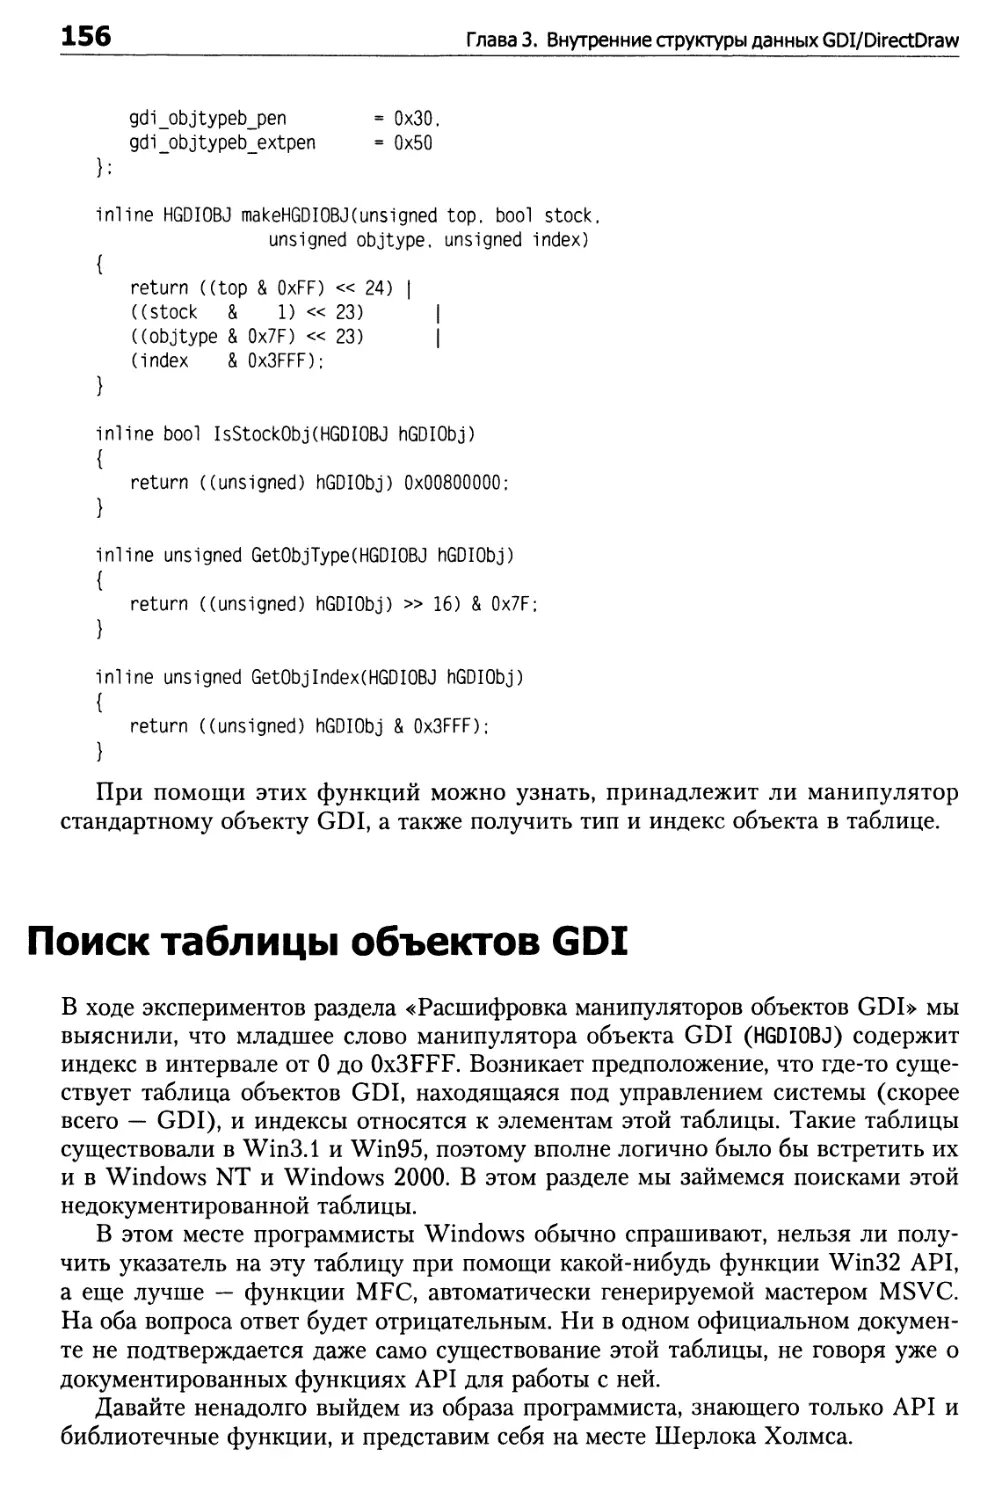 Поиск таблицы объектов GDI